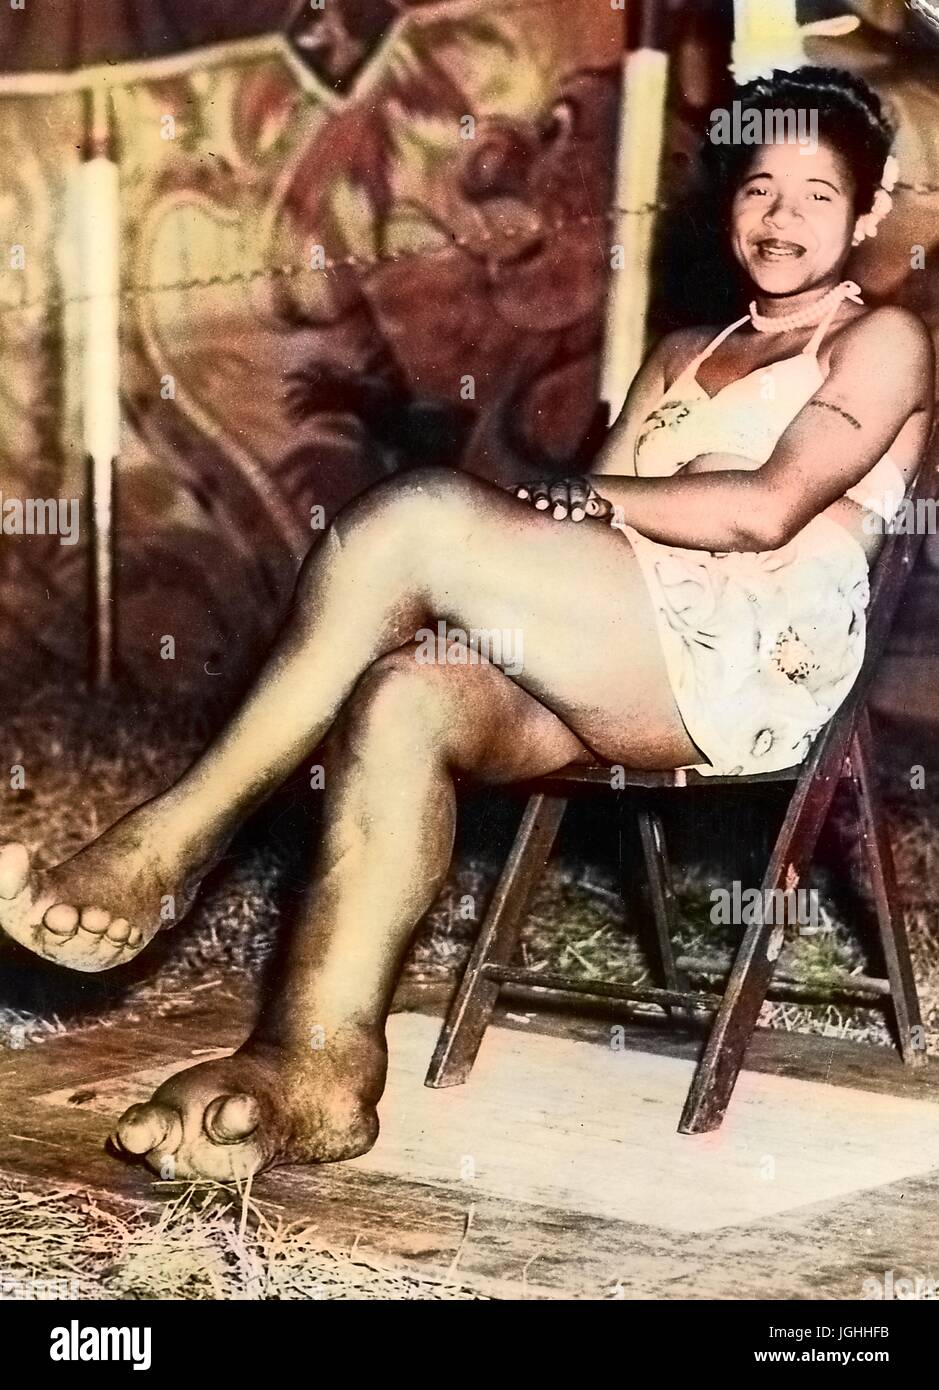 African American Sideshow Circus Entertainer Sylvia Portis, bekannt als Sylvia das Elefanten-Mädchen, lächelnd und zeigt ihre Füße, die verformt werden und zeigen Anzeichen von der Krankheit Elephantiasis, 1944. Hinweis: Bild wurde digital eingefärbt wurde mit einem modernen Verfahren. Farben können Zeit ungenau sein. Stockfoto